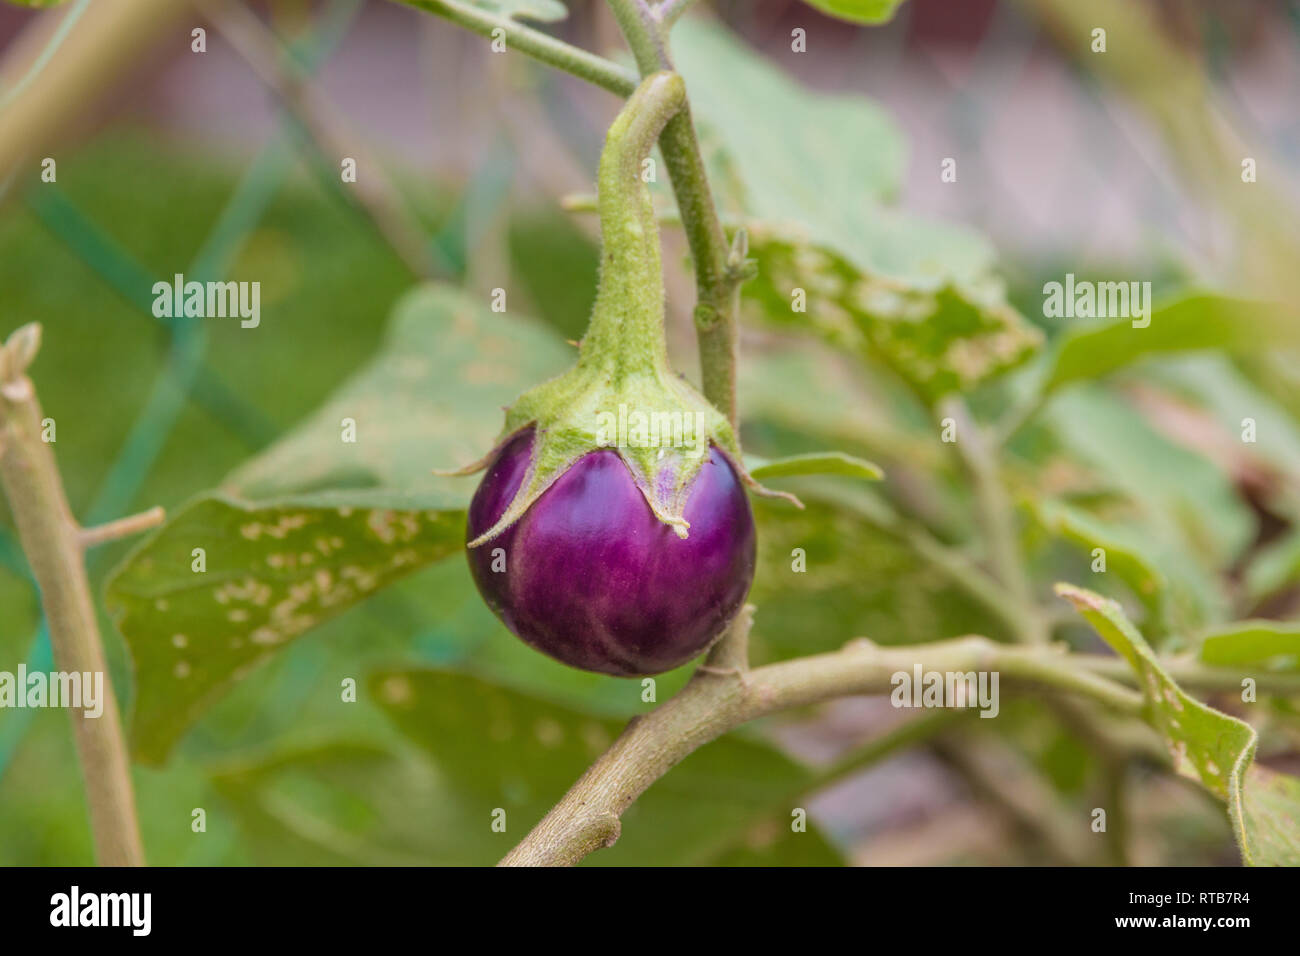 Schöner Blick auf einen kleinen, runden lila Thai Auberginen (Urtica), noch  an der Pflanze, organisch in einem Garten im Südosten gewachsen  Stockfotografie - Alamy